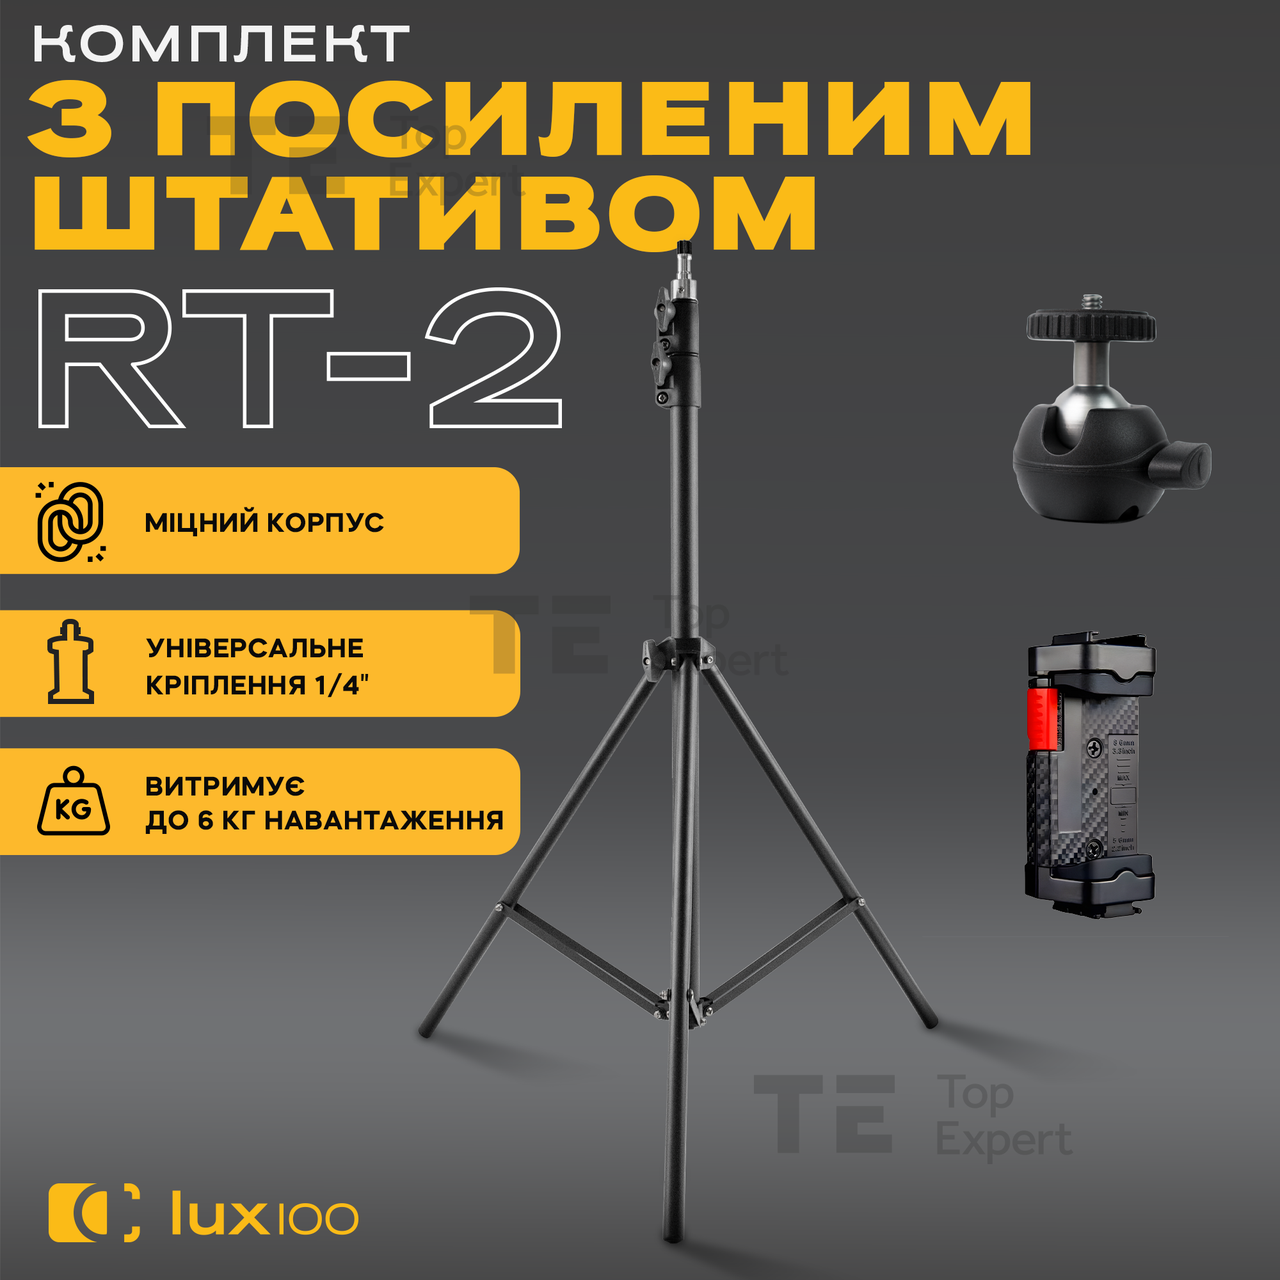 Посилений штатив LUX100 RT-2 2.1 м з тримачем затискачем для телефона камери кільцевої лампи відеосвітла